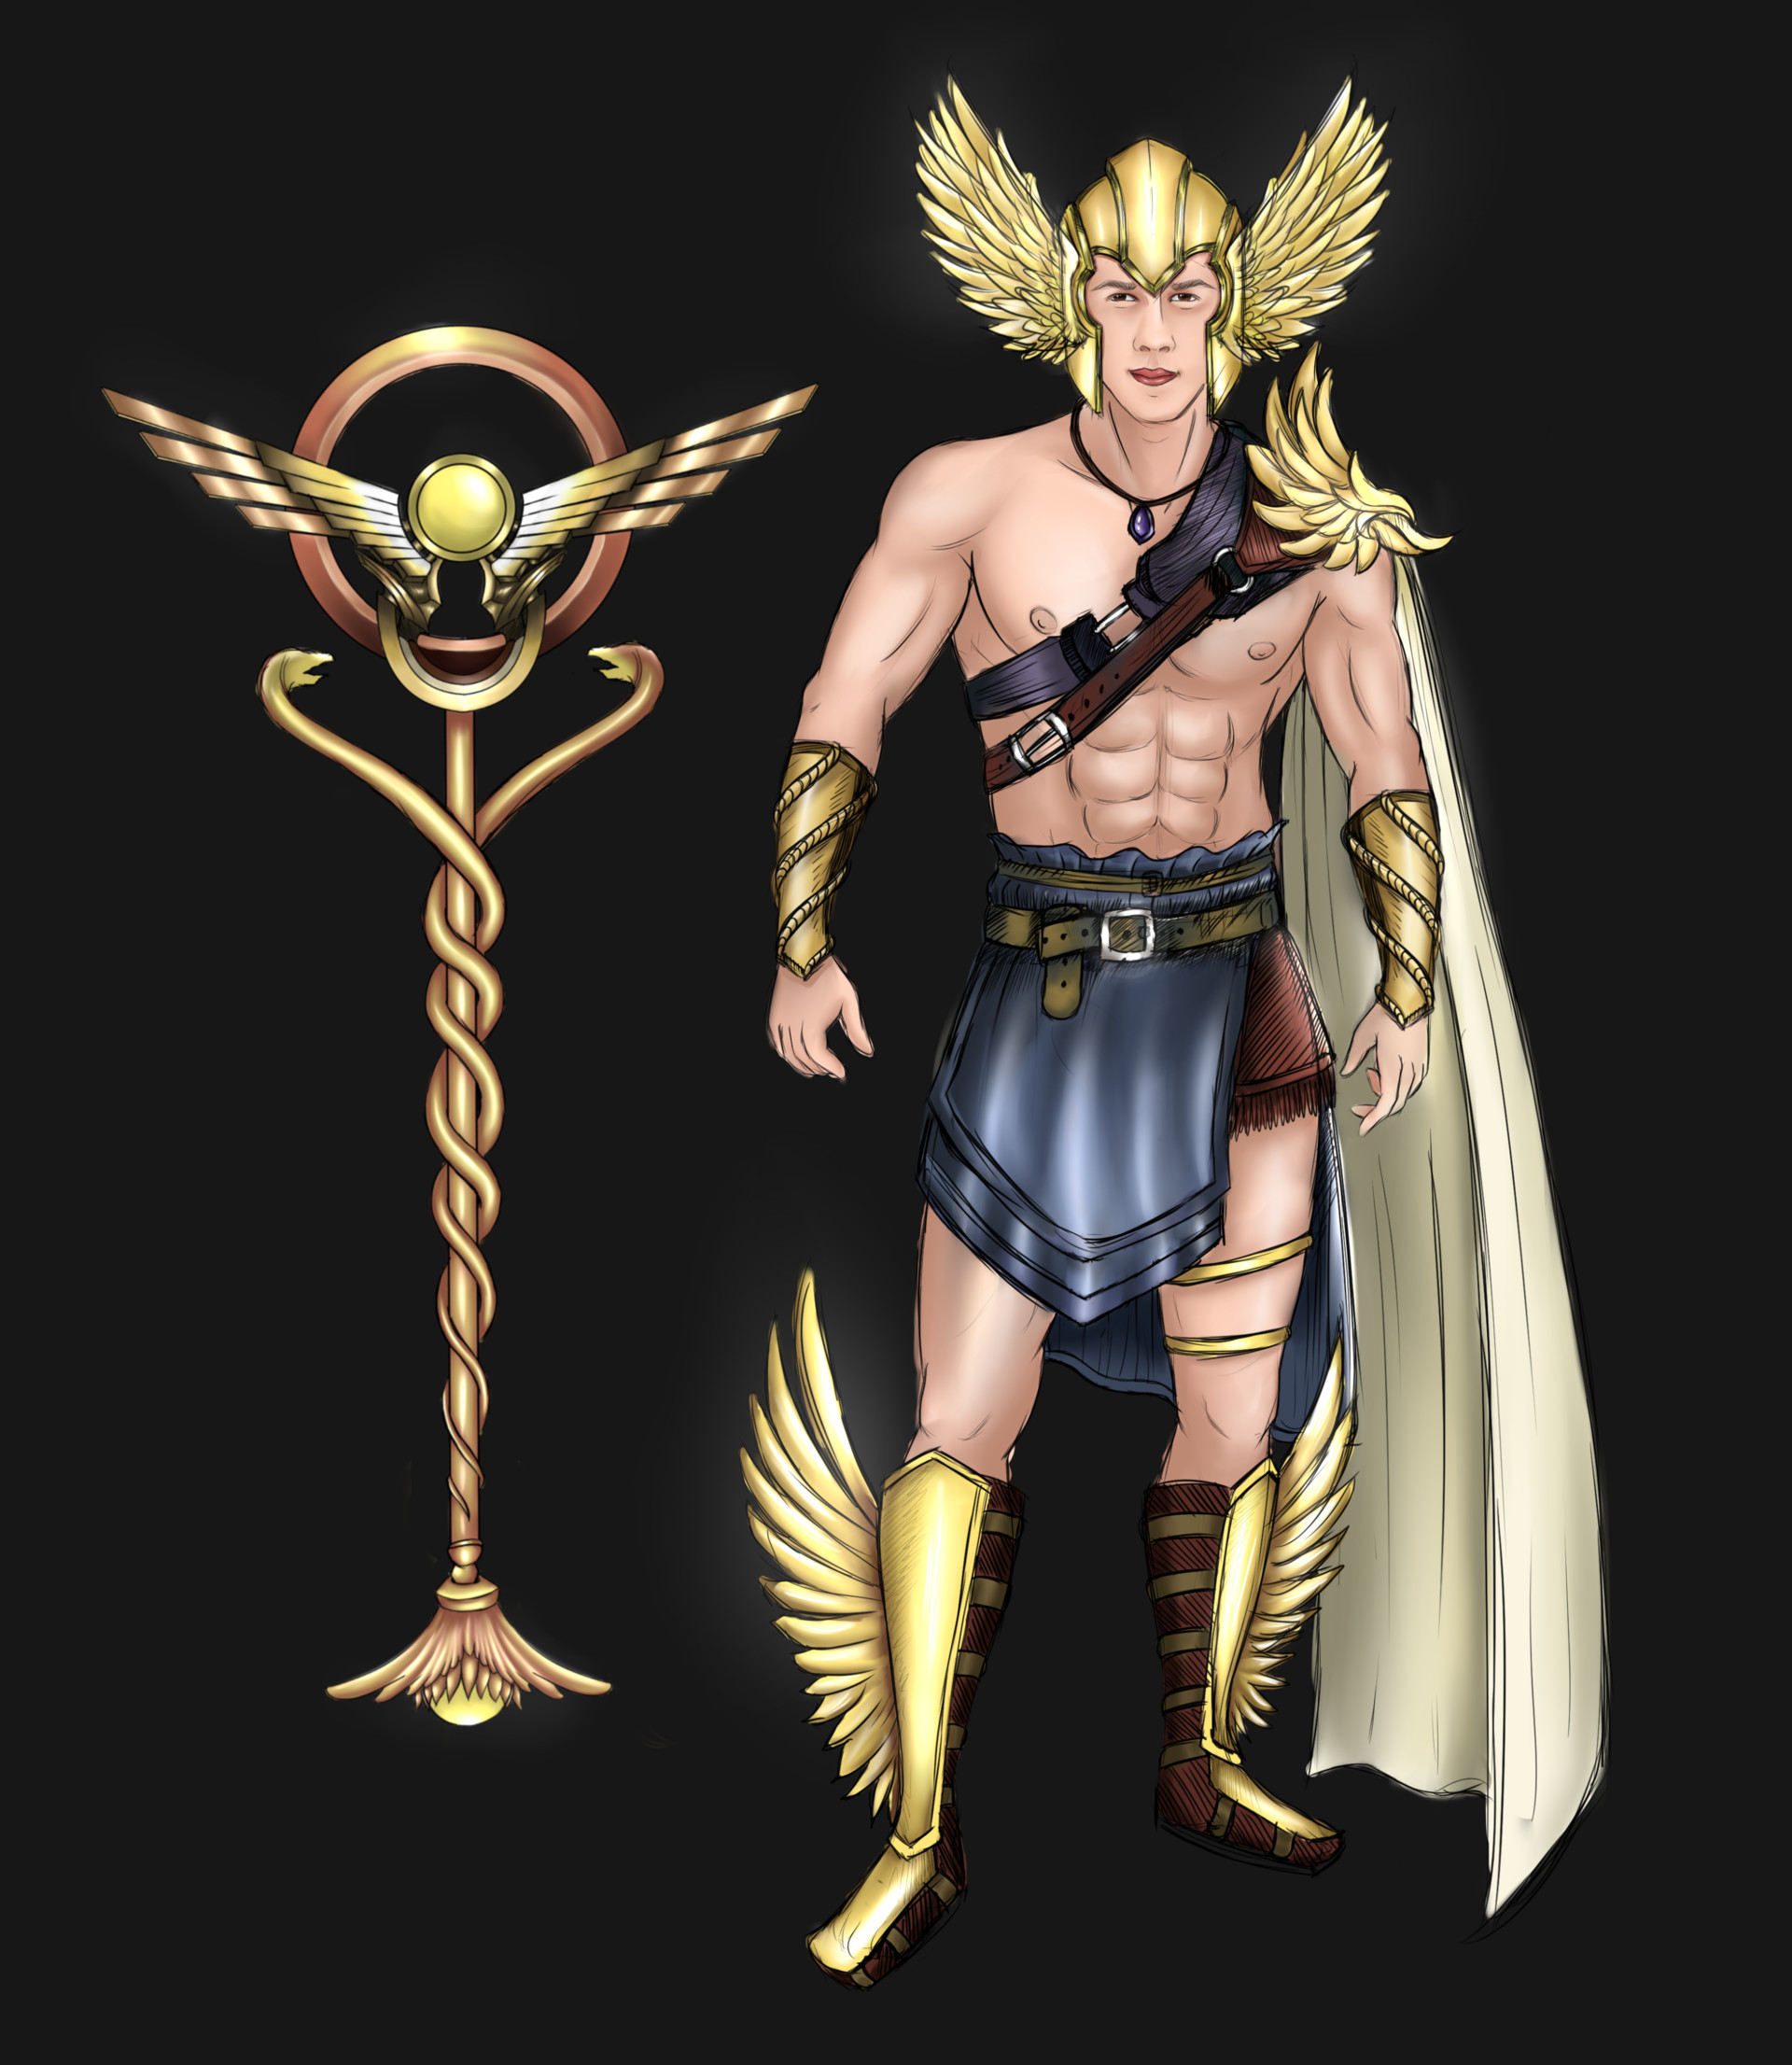 ArtStation - Hermes The Greek God